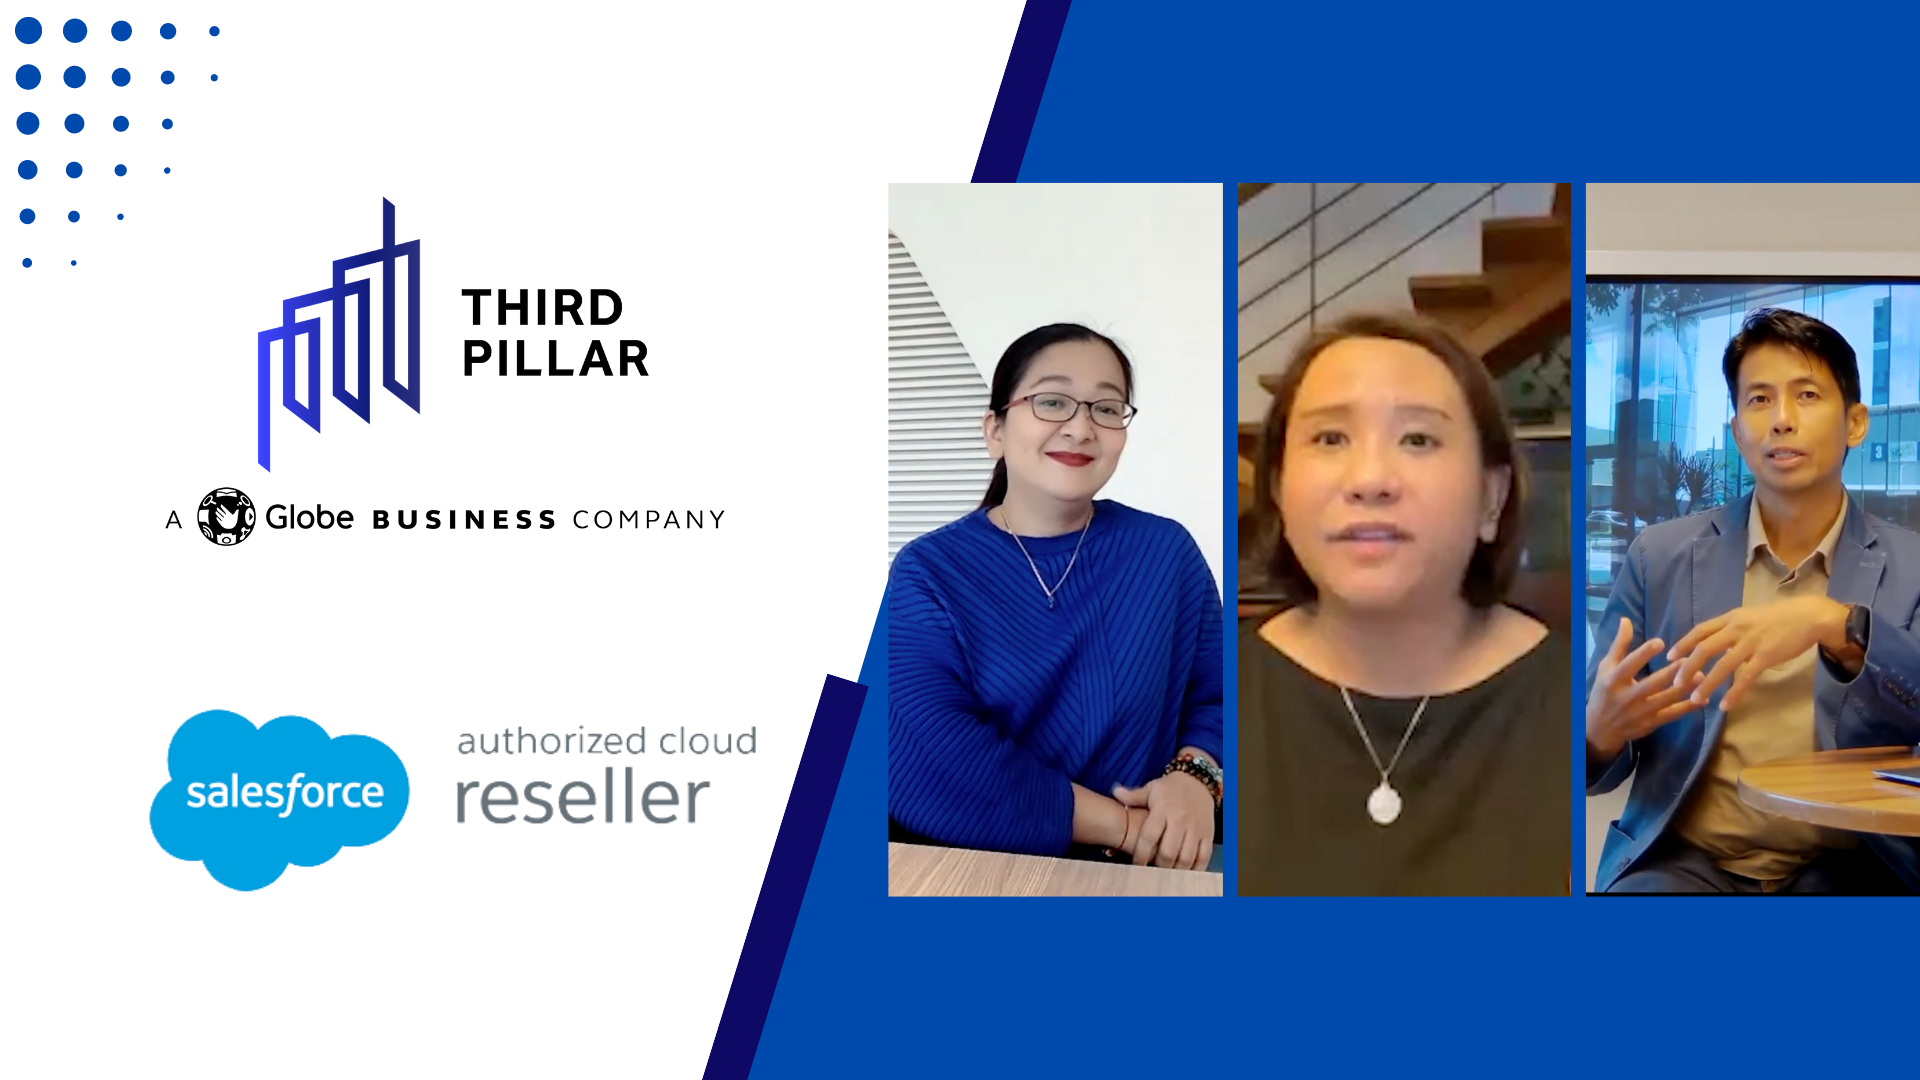 Third Pillar empowers Globe through Salesforce Sales Cloud